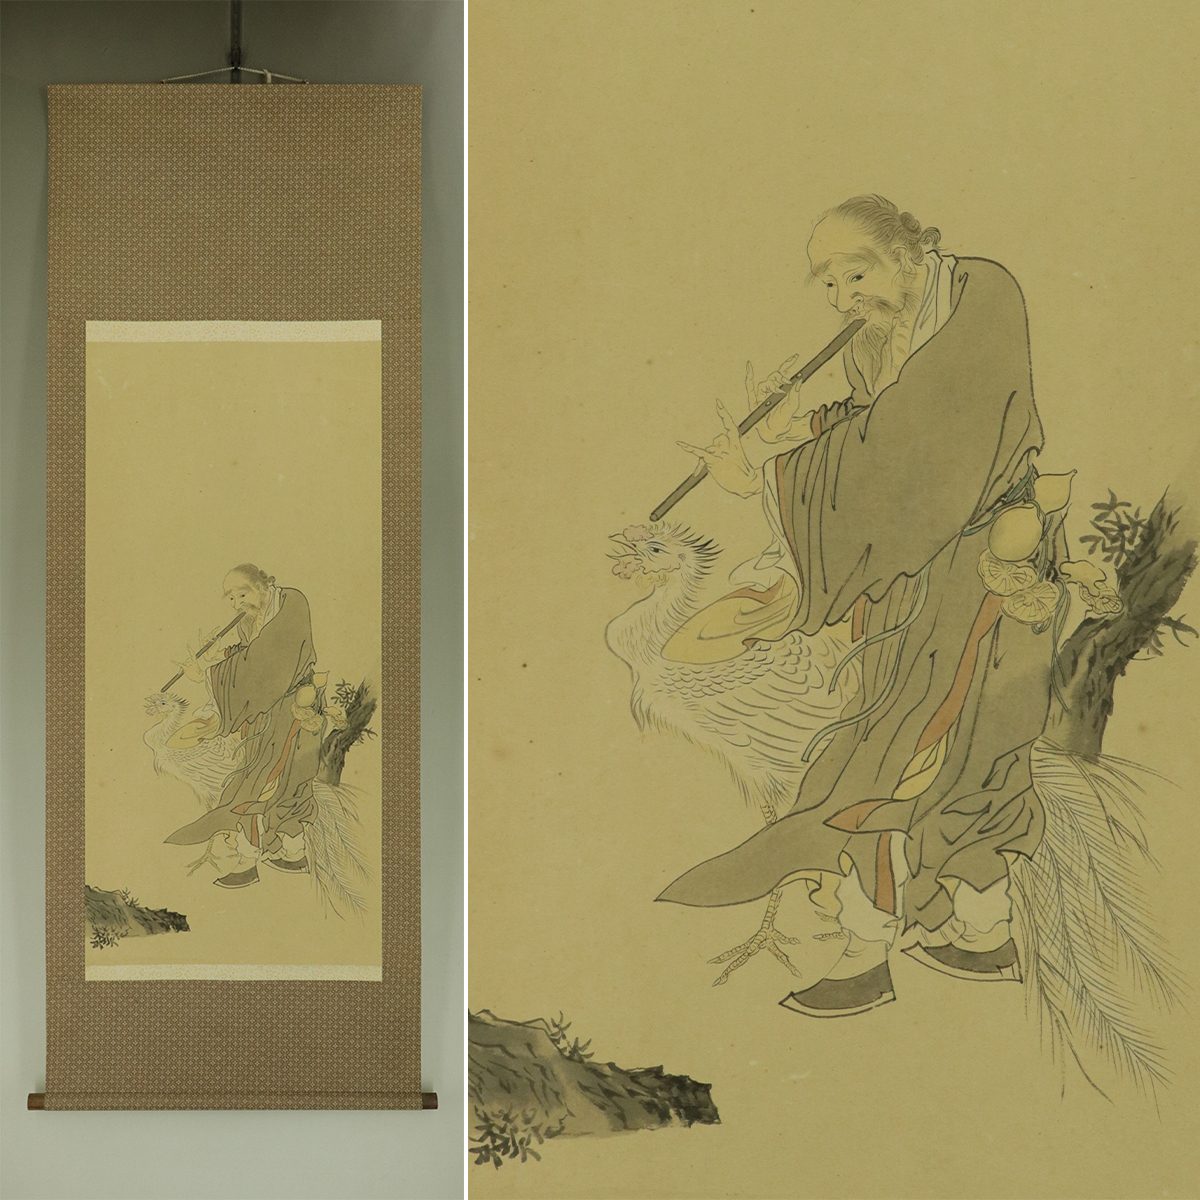 [Handschriftlich] Altes Gemälde [Pfaueneinsiedler] ◆ Taschenbuch ◆ Hängerolle u12030b, Malerei, Japanische Malerei, Person, Bodhisattva